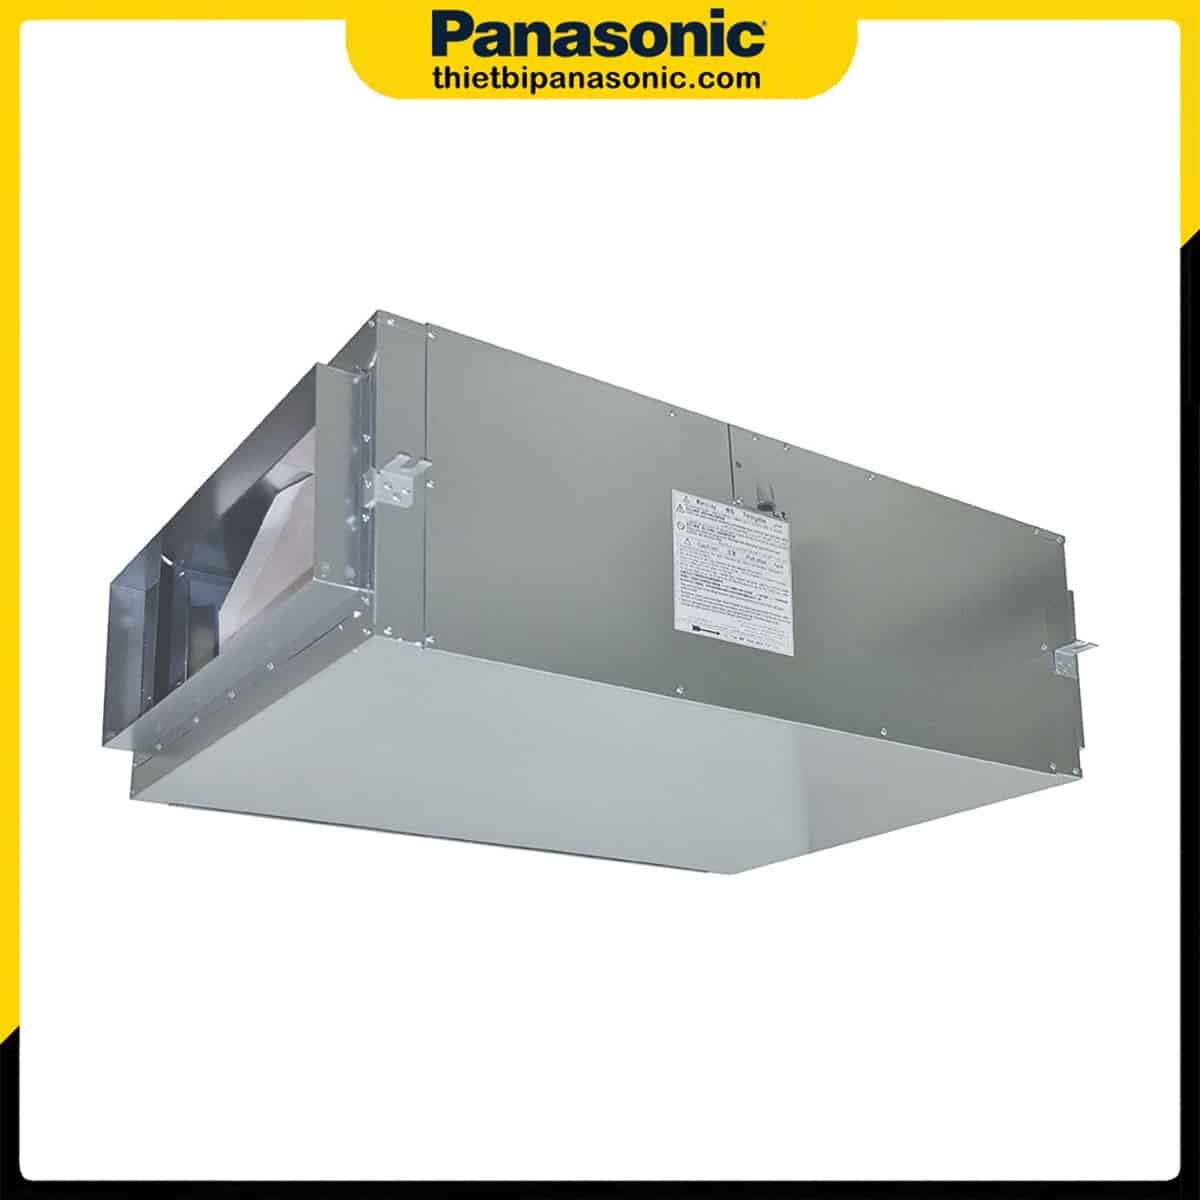 Quạt hút công nghiệp 3 pha Panasonic FV-25SM3 được làm từ kim loại cao cấp cho khả năng vận hành bền bỉ